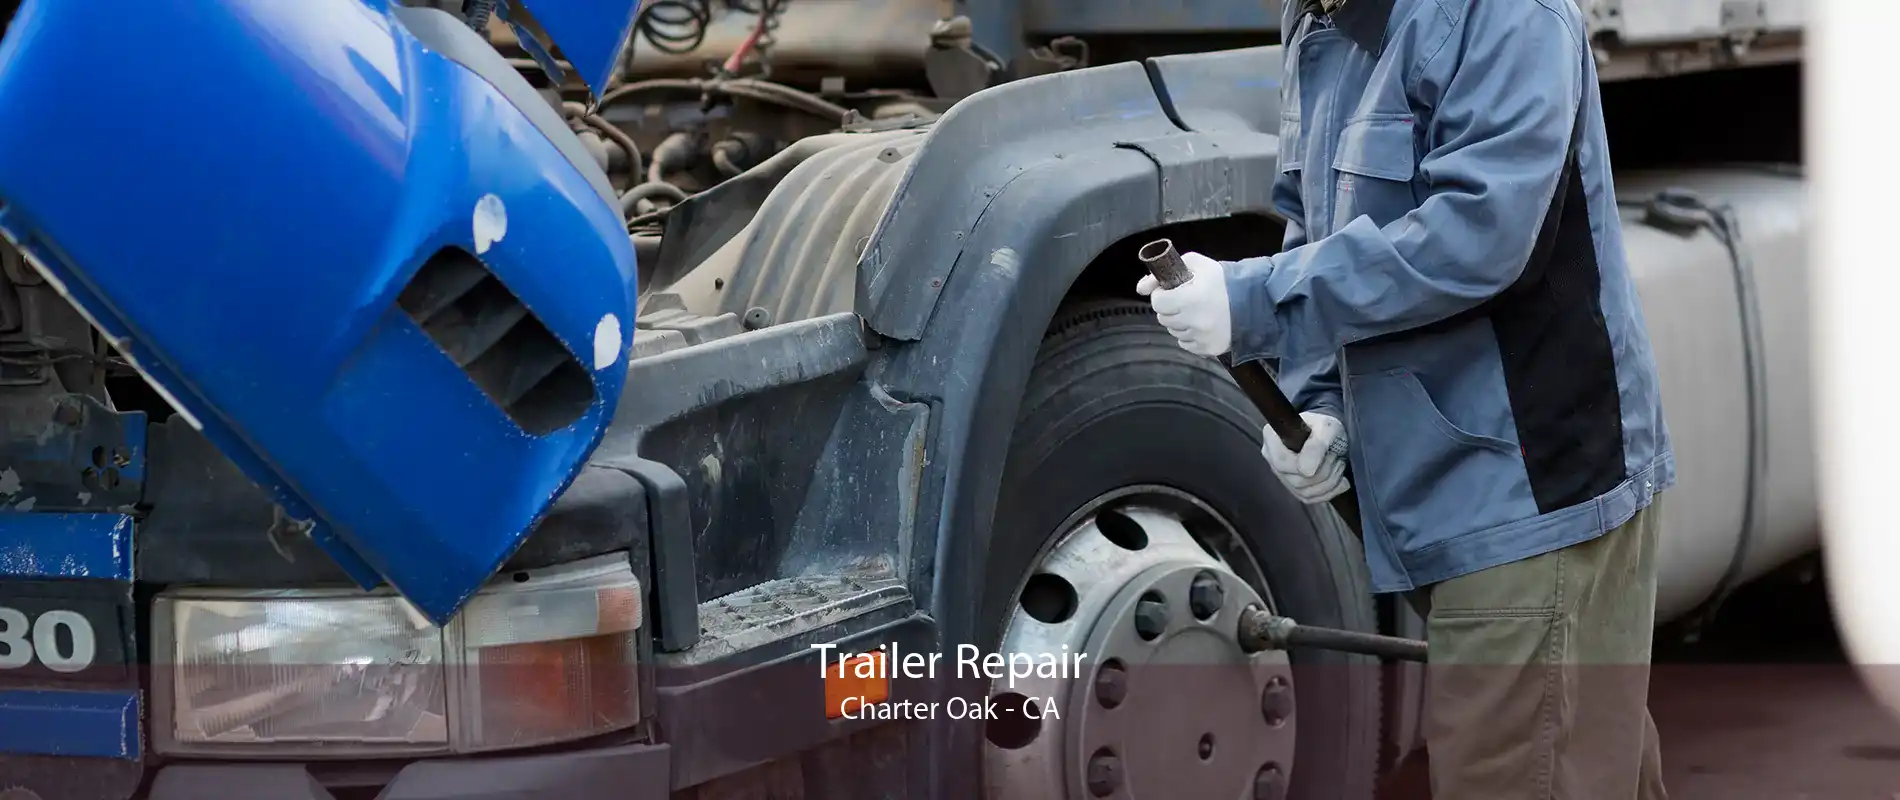 Trailer Repair Charter Oak - CA